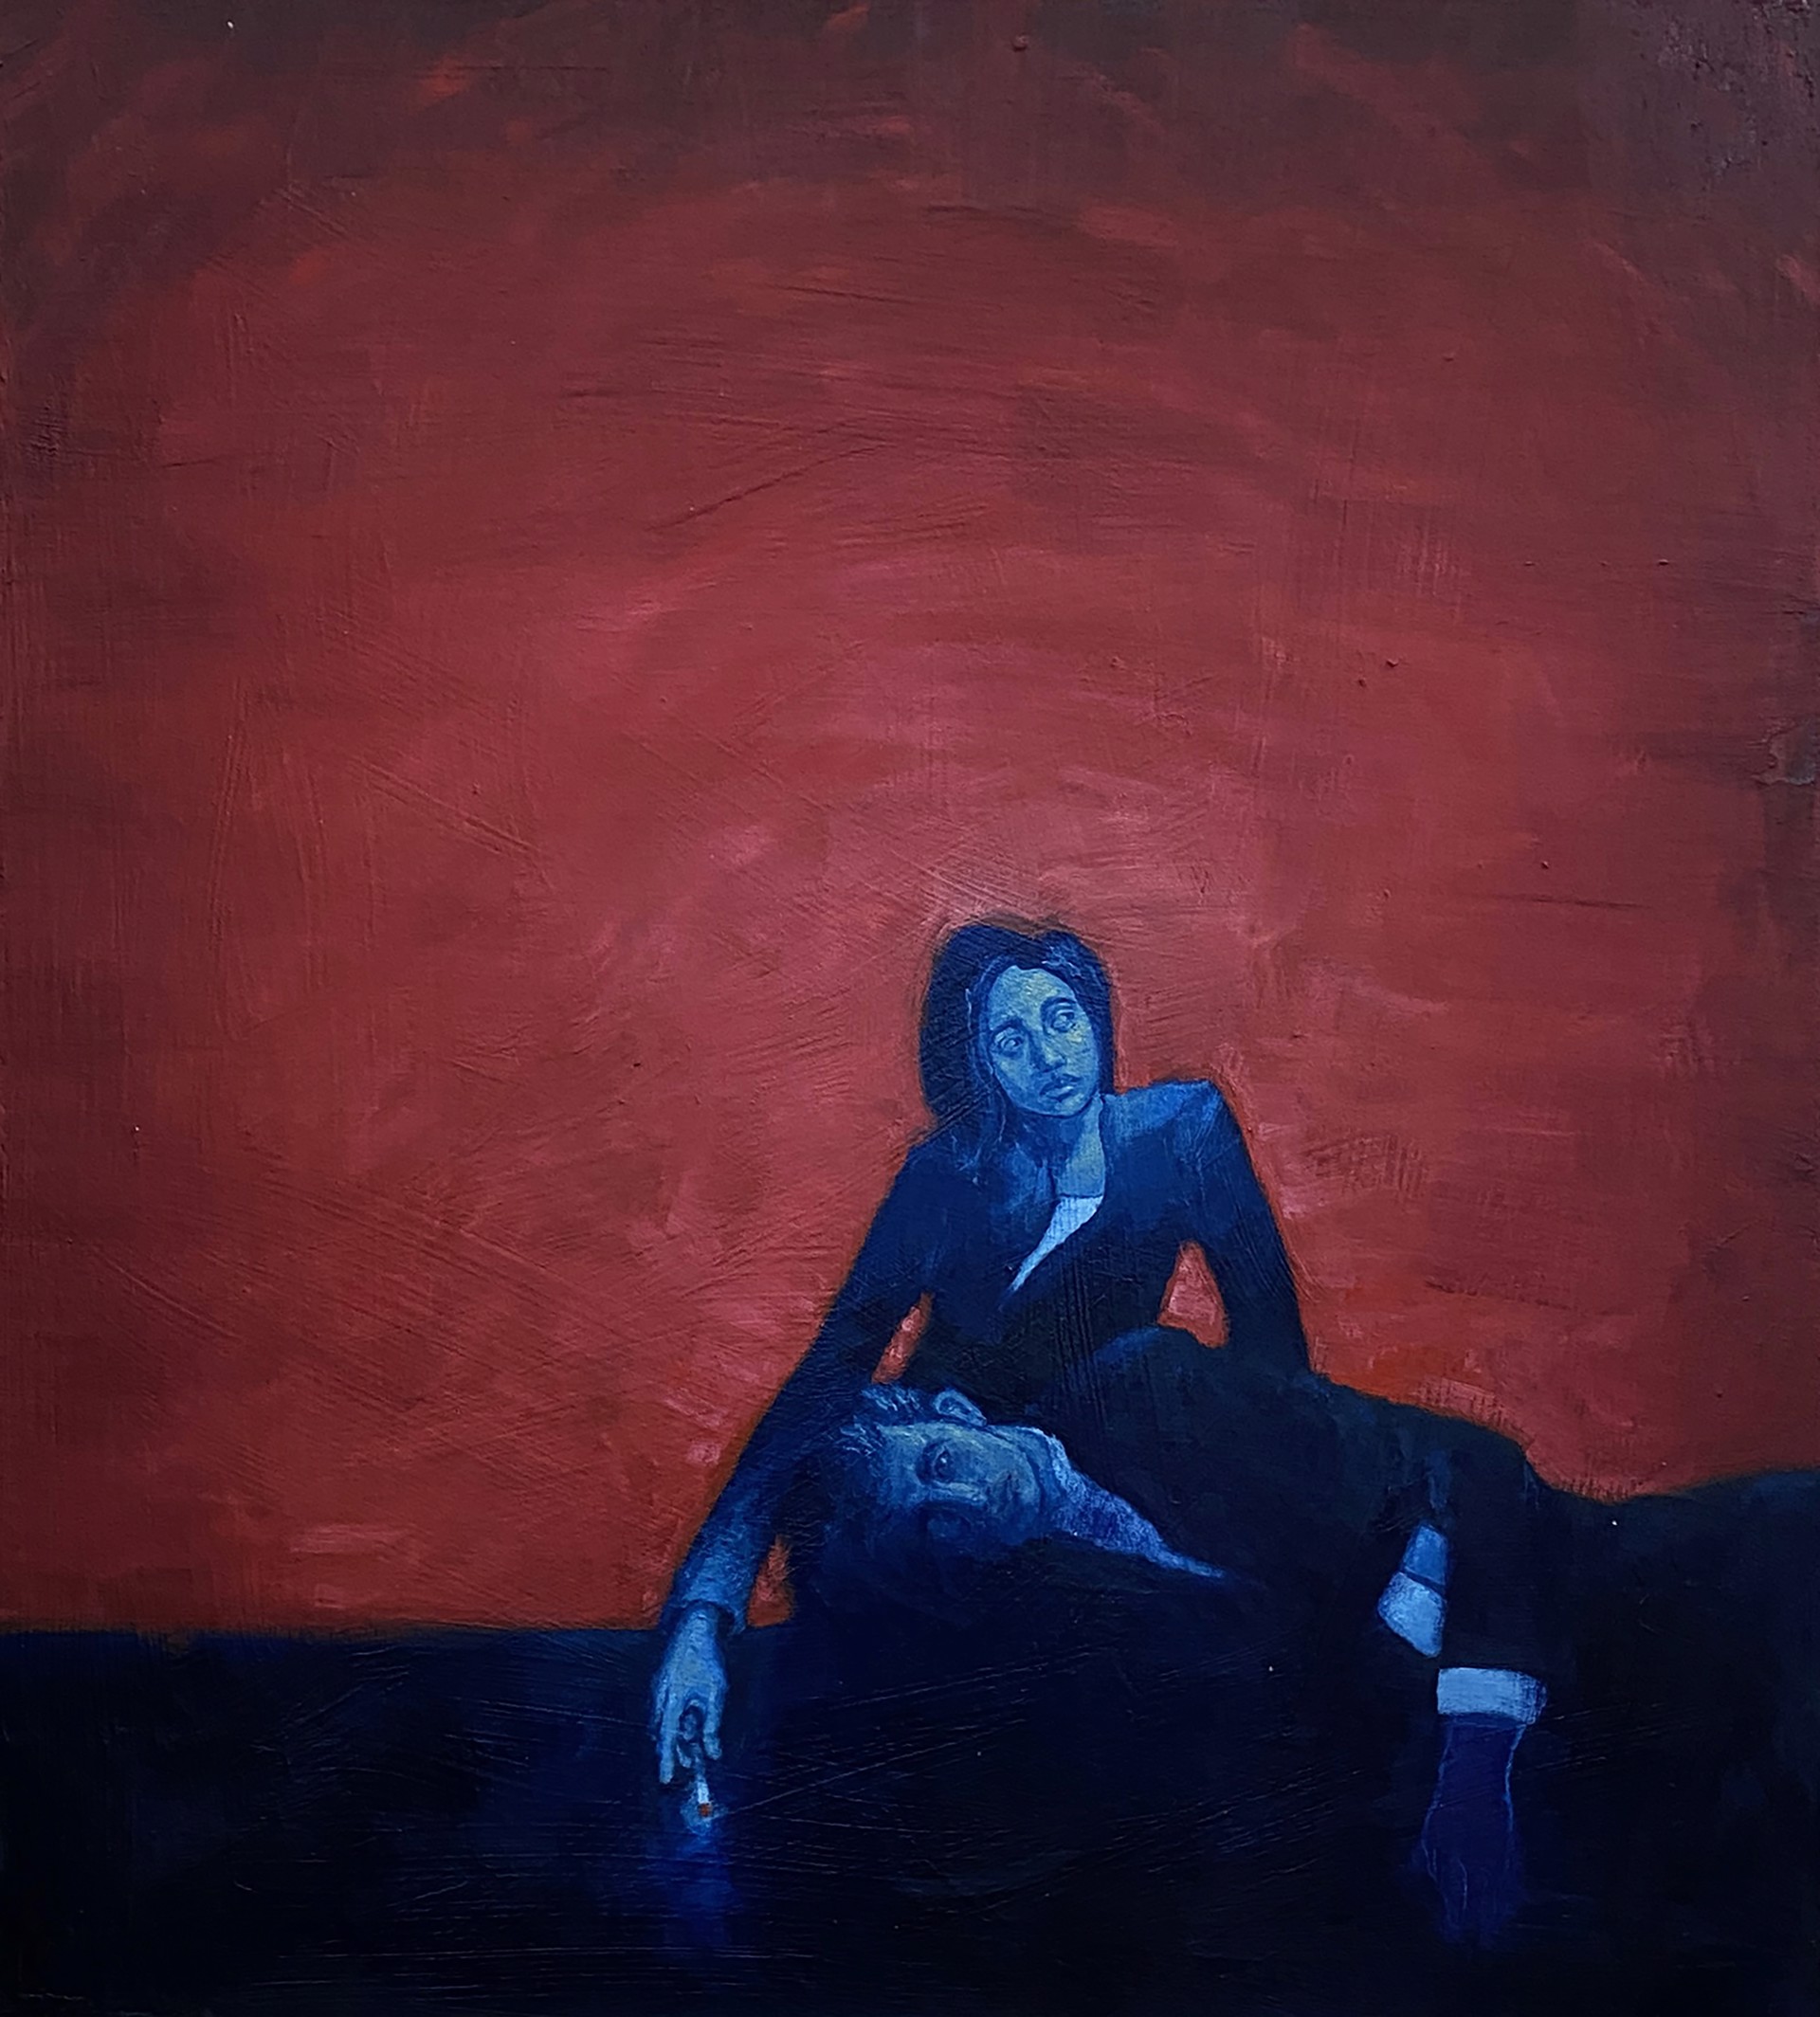 Date Night by Steven Allison